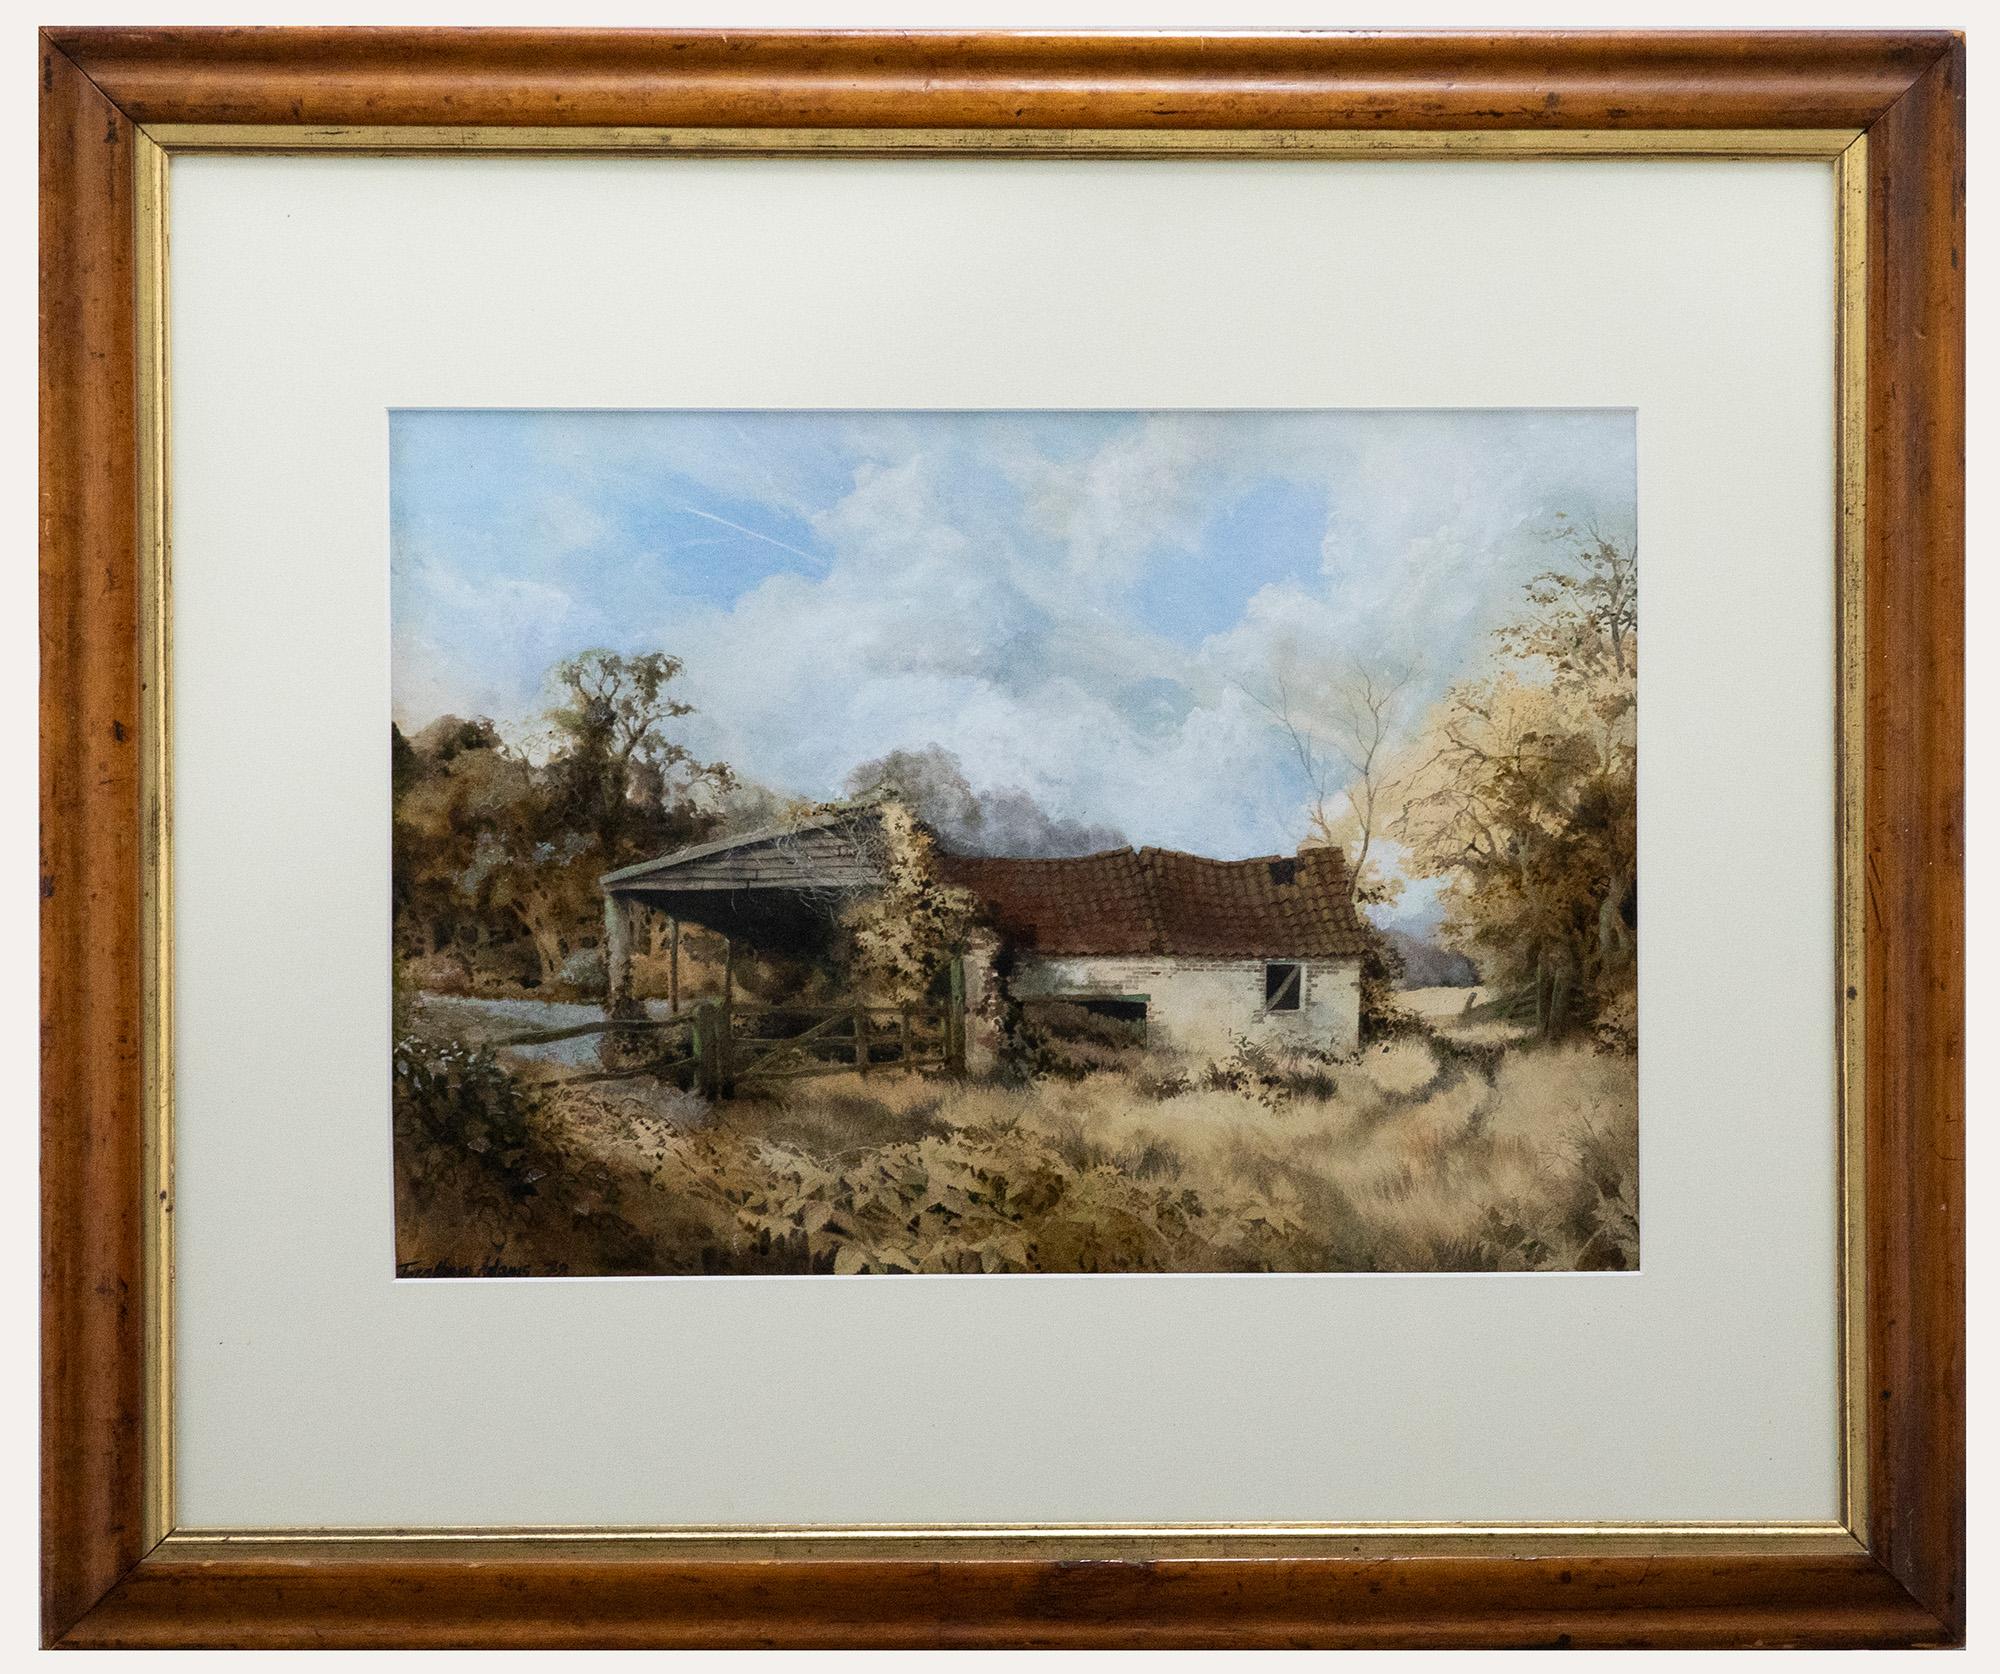 Une charmante étude à l'aquarelle d'une grange à huile dans le Suffolk avec un appentis en bois. L'artiste capture la grange accidentée et son environnement sauvage dans les moindres détails. Signé et daté en bas à gauche. Présenté dans un cadre